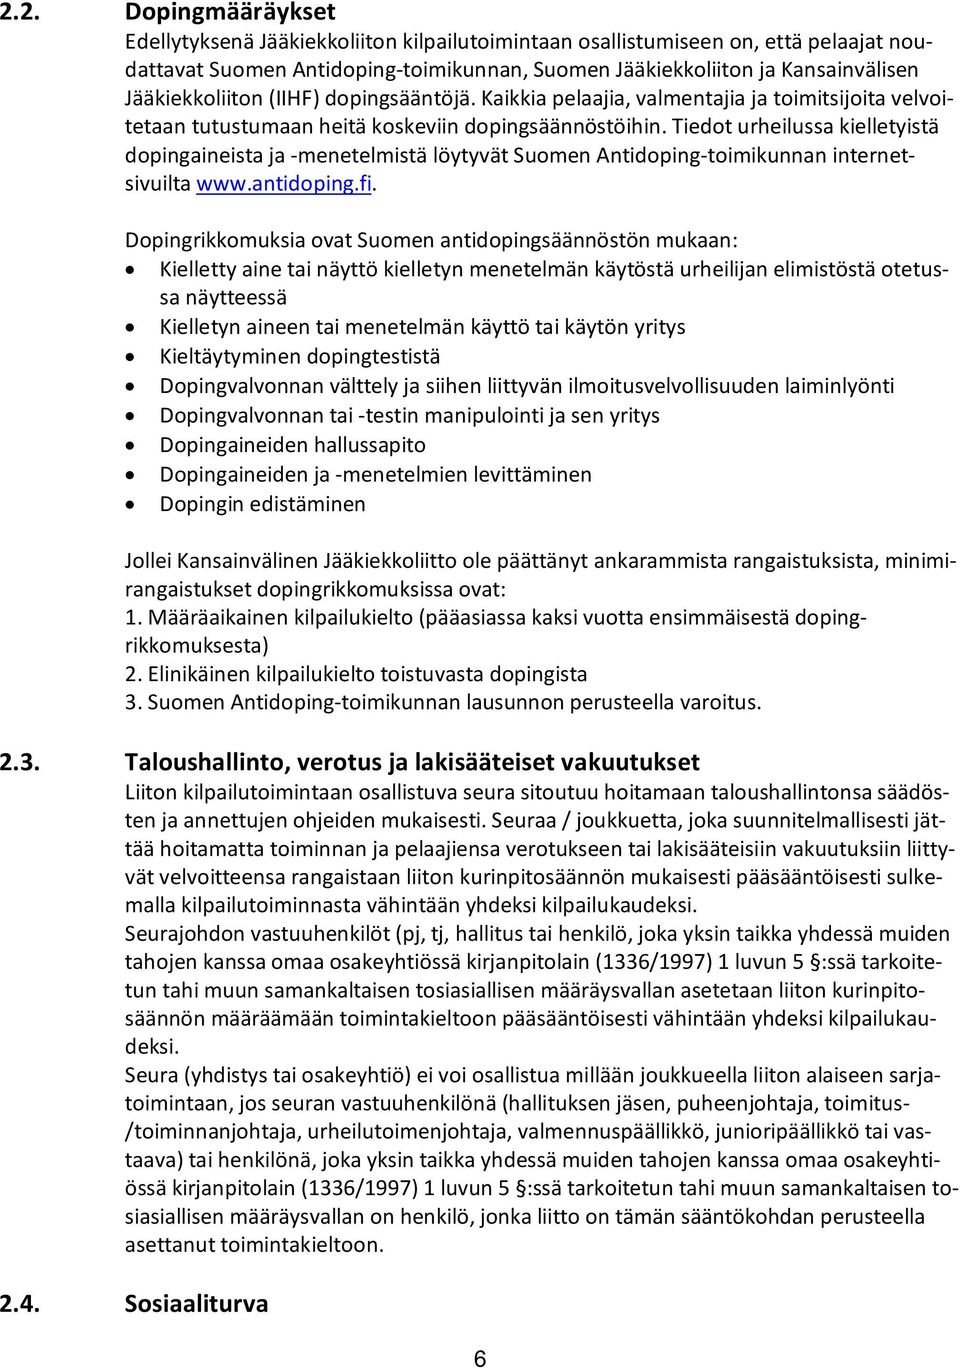 Tiedot urheilussa kielletyistä dopingaineista ja -menetelmistä löytyvät Suomen Antidoping-toimikunnan internetsivuilta www.antidoping.fi.